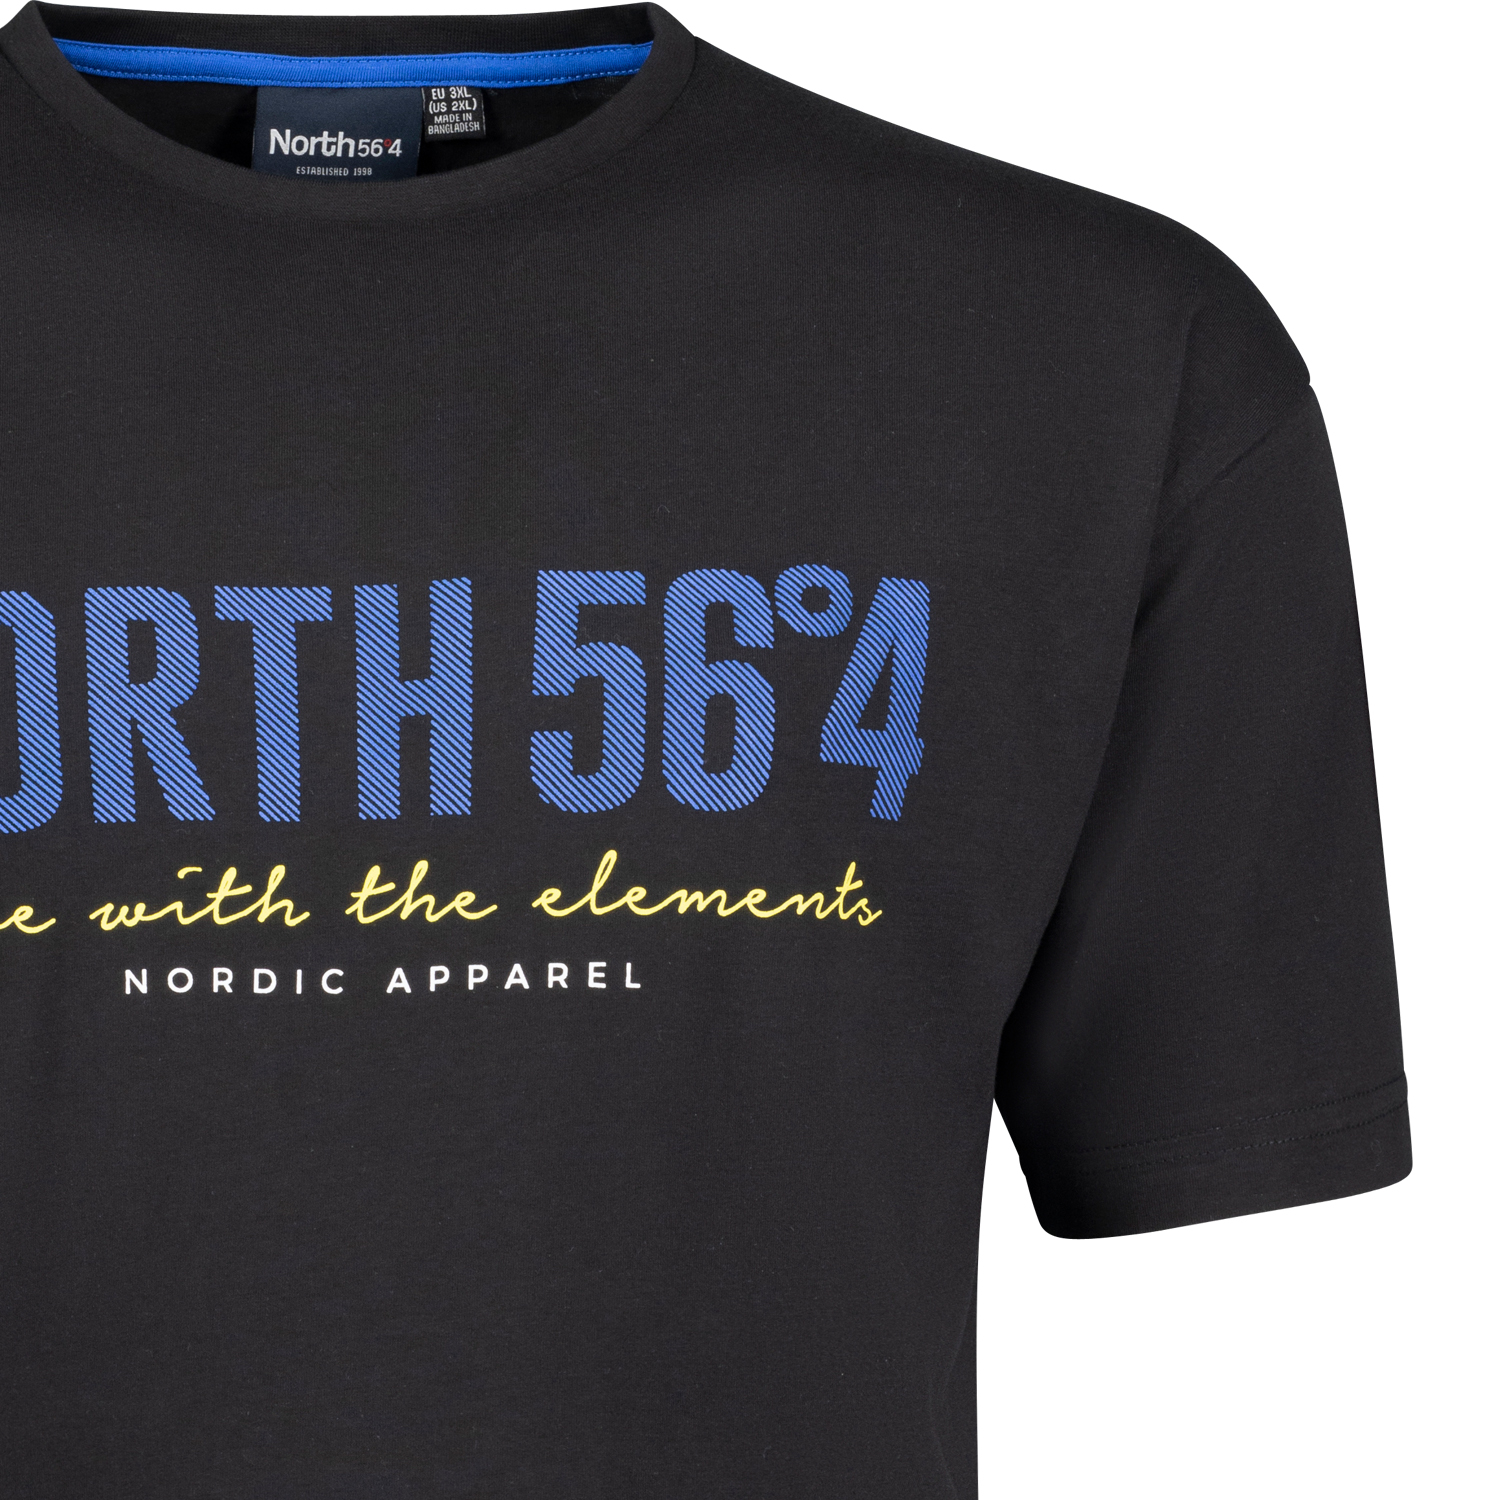 Kurzarm Shirt von North 56°4 für Herren schwarz mit Frontprint in Übergrößen bis 8XL